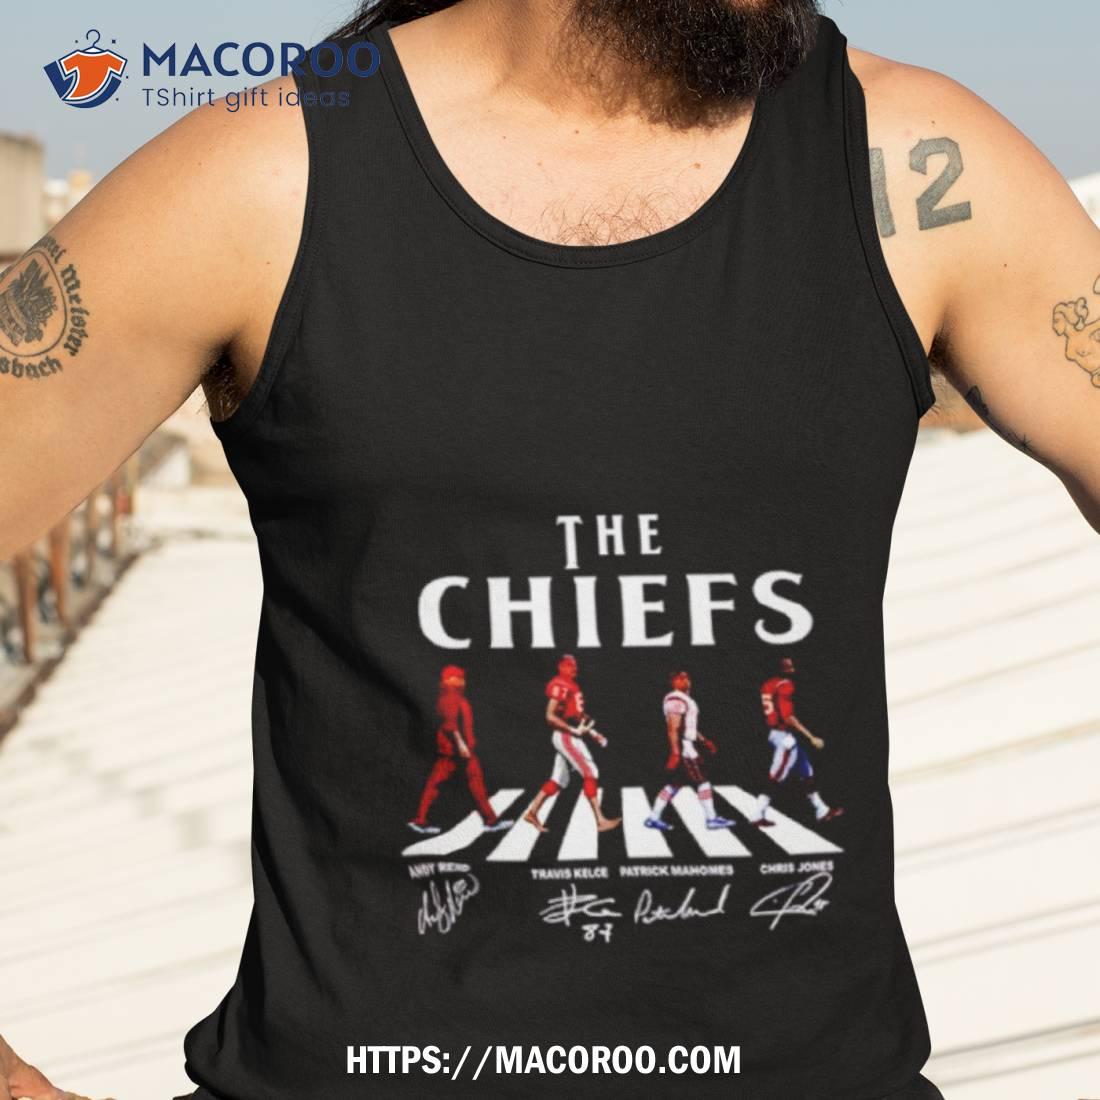 Patrick Mahomes Tee, Travis Kelce TShirt, Funny Super Bowl Shirt